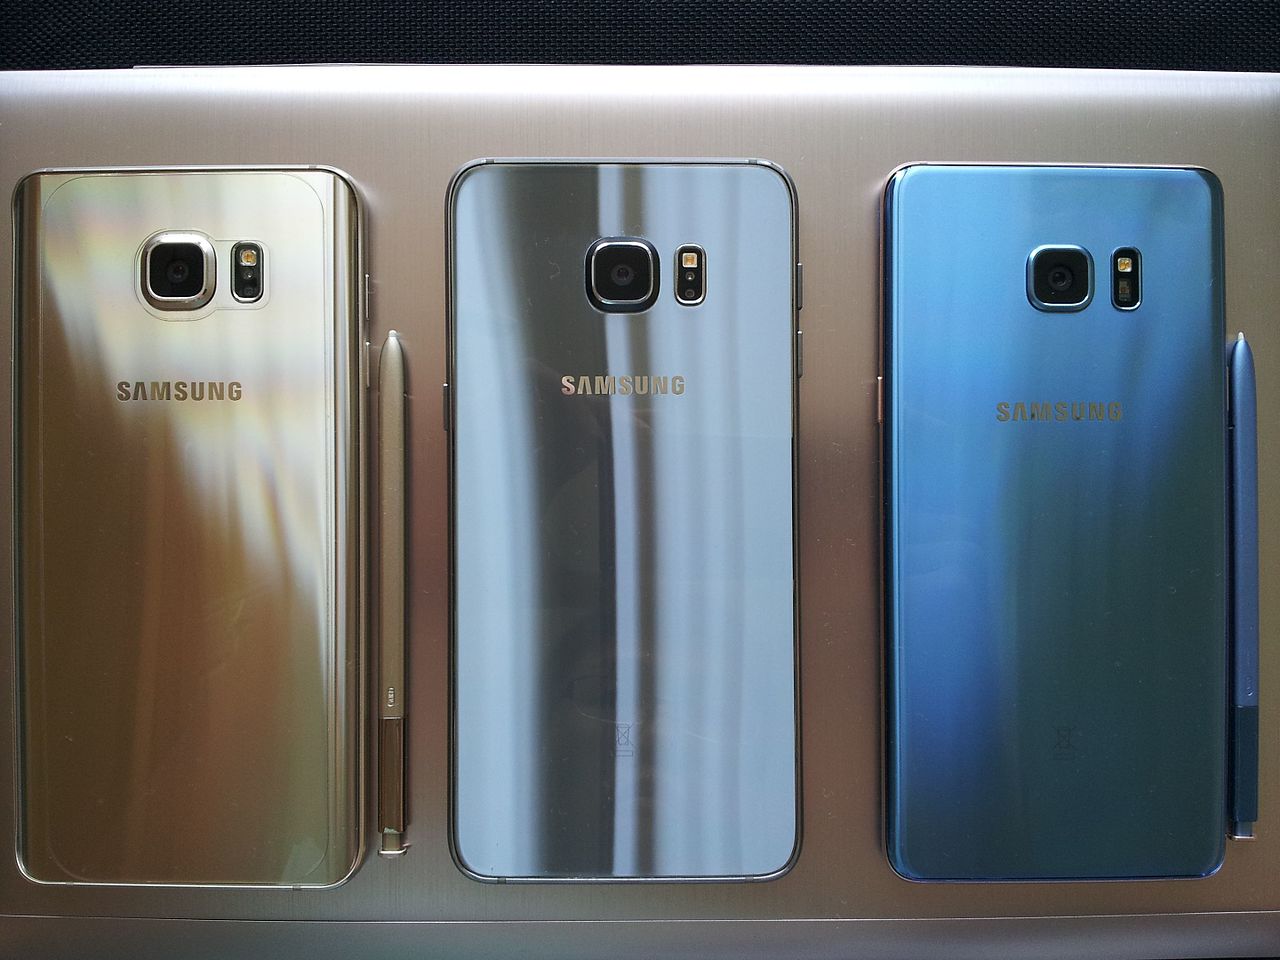 El Samsung Galaxy Note 7 presentaba peligrosas fallas con su batería, obligando a la marca a reemplazar todo el inventario.